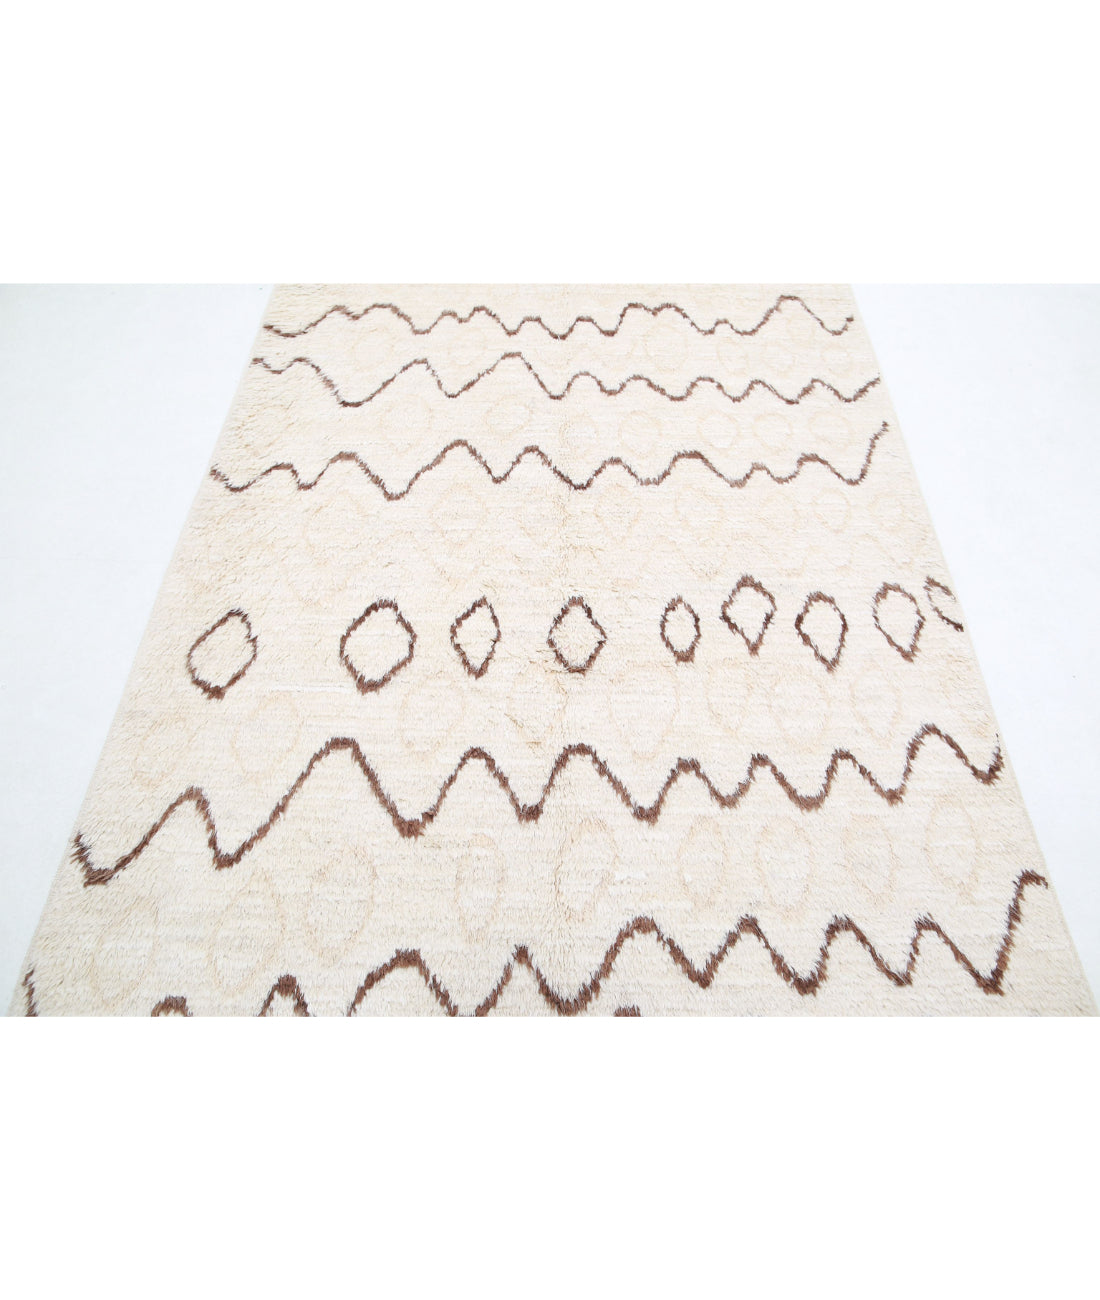 hand-knotted-morocaan-wool-rug-5013475-4.jpg